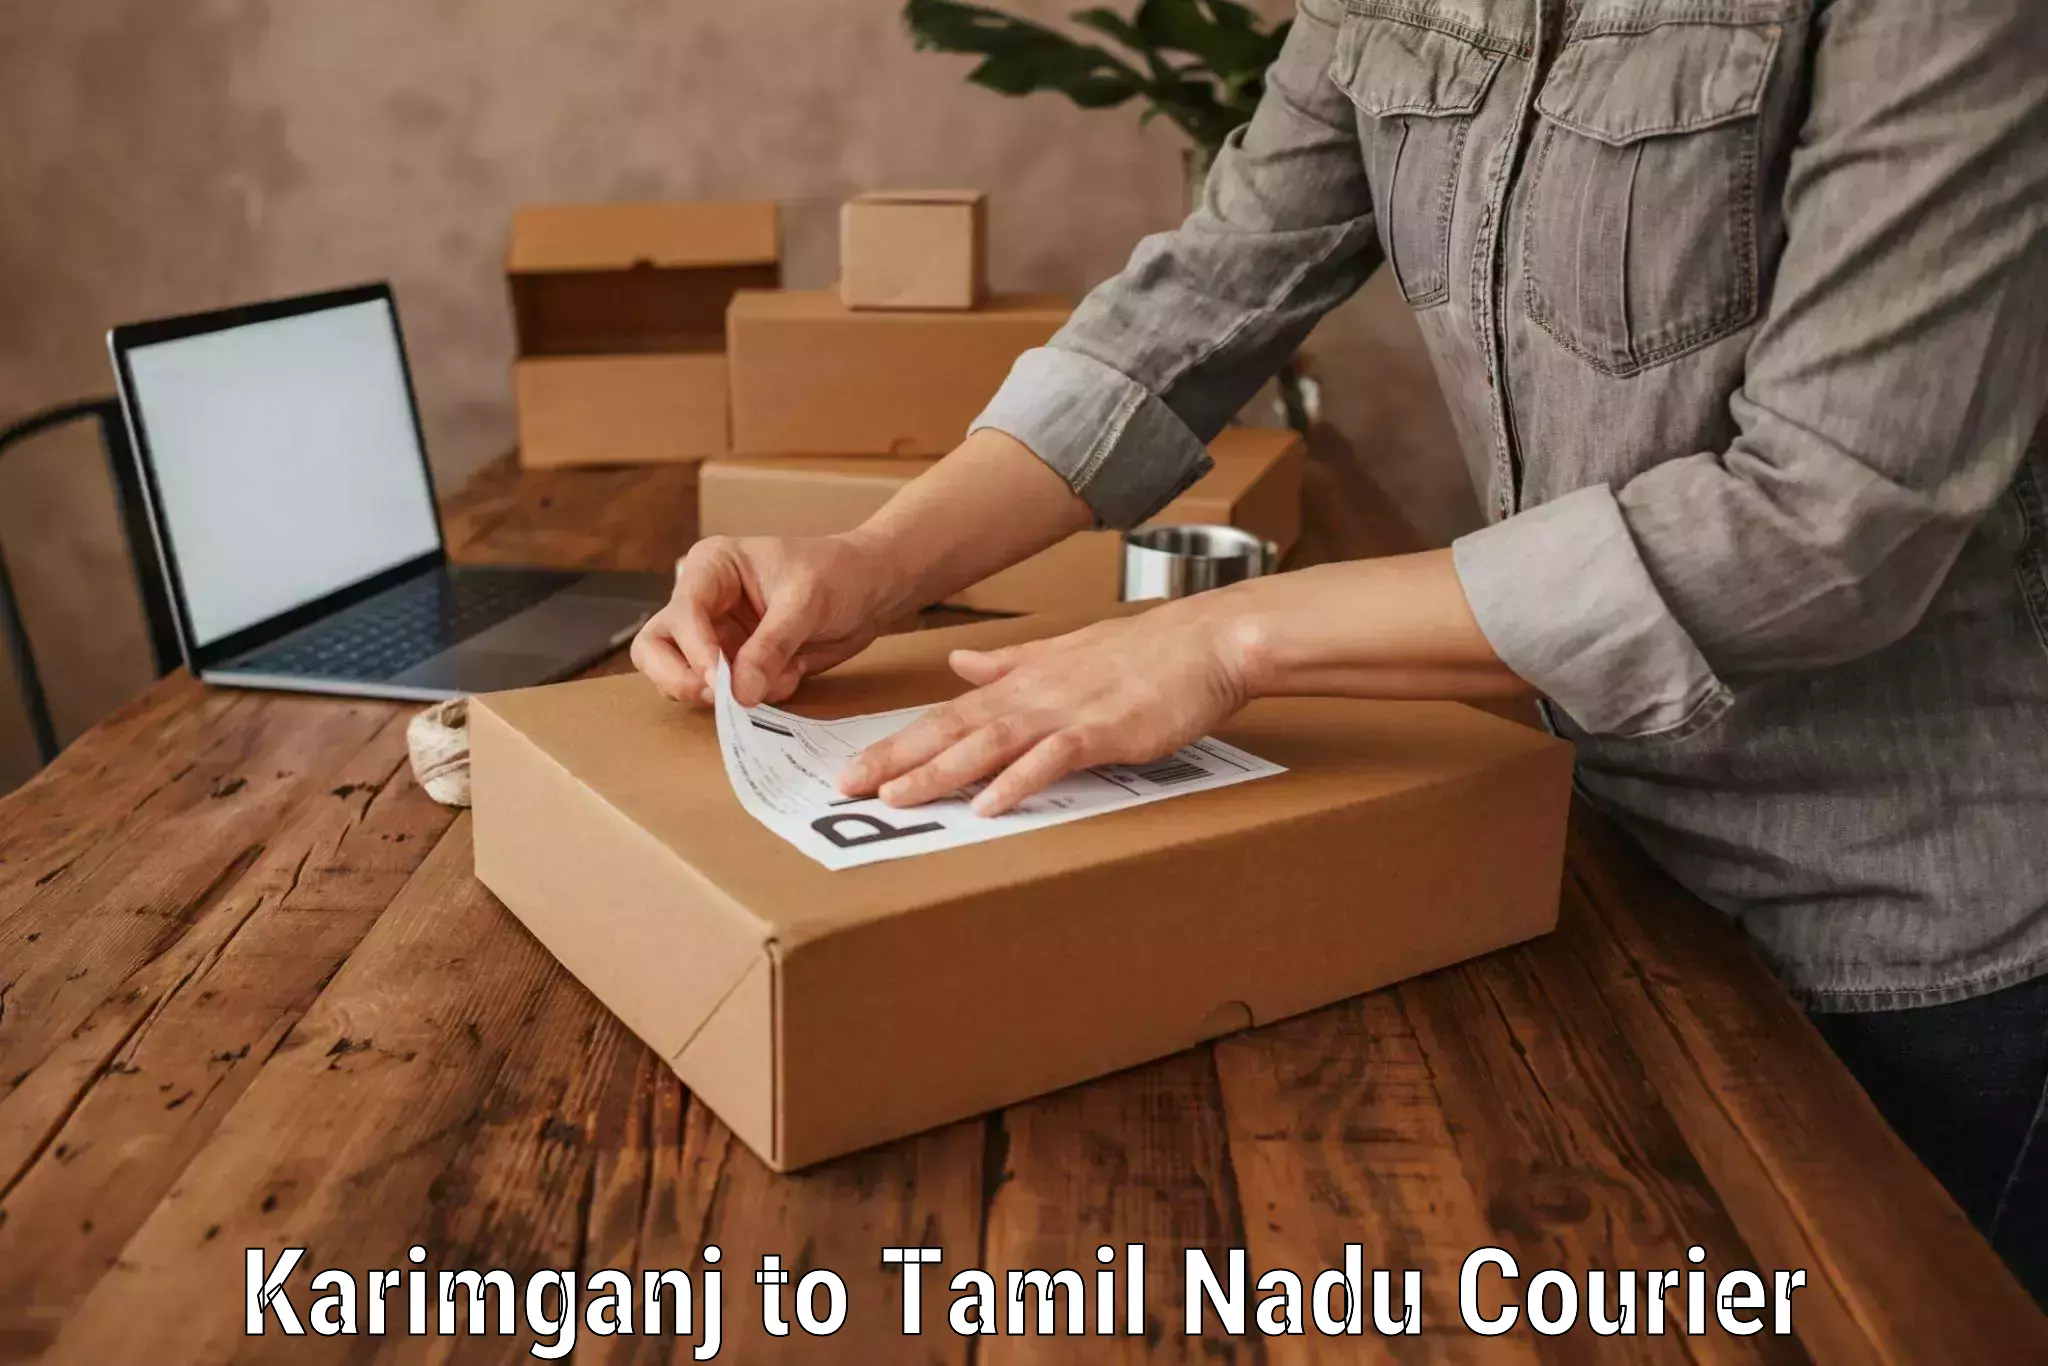 Luggage shipment specialists Karimganj to Tamil Nadu